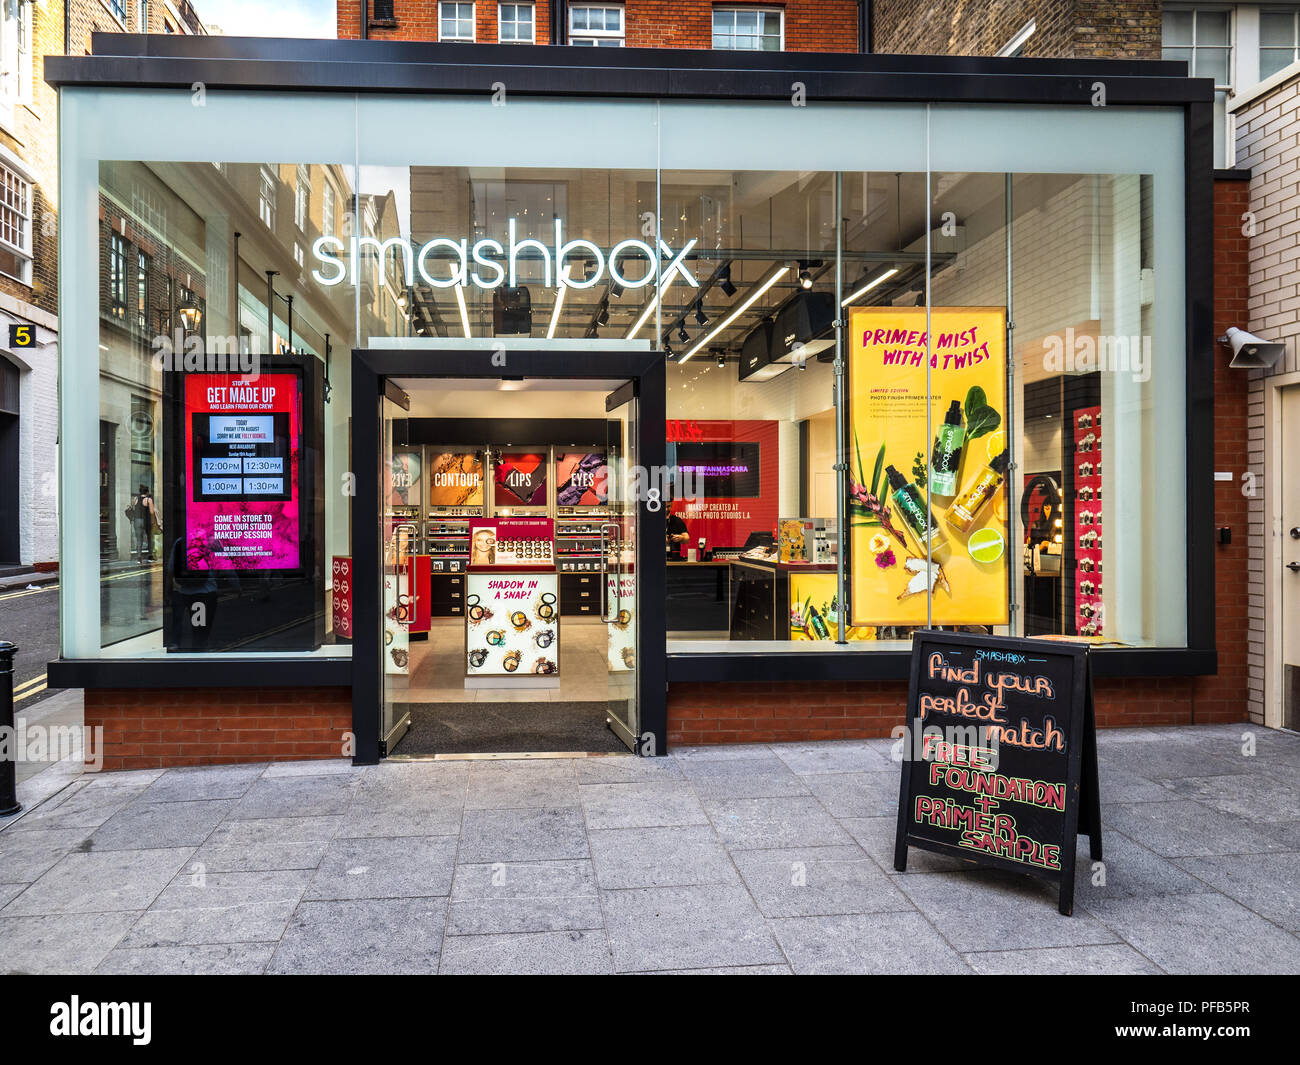 Smashbox Flagship Store en el Covent Garden de Londres - Smashbox es un distribuidor de productos de belleza y maquillaje comenzó desde Smashbox Studios en Los Ángeles 1990 Foto de stock